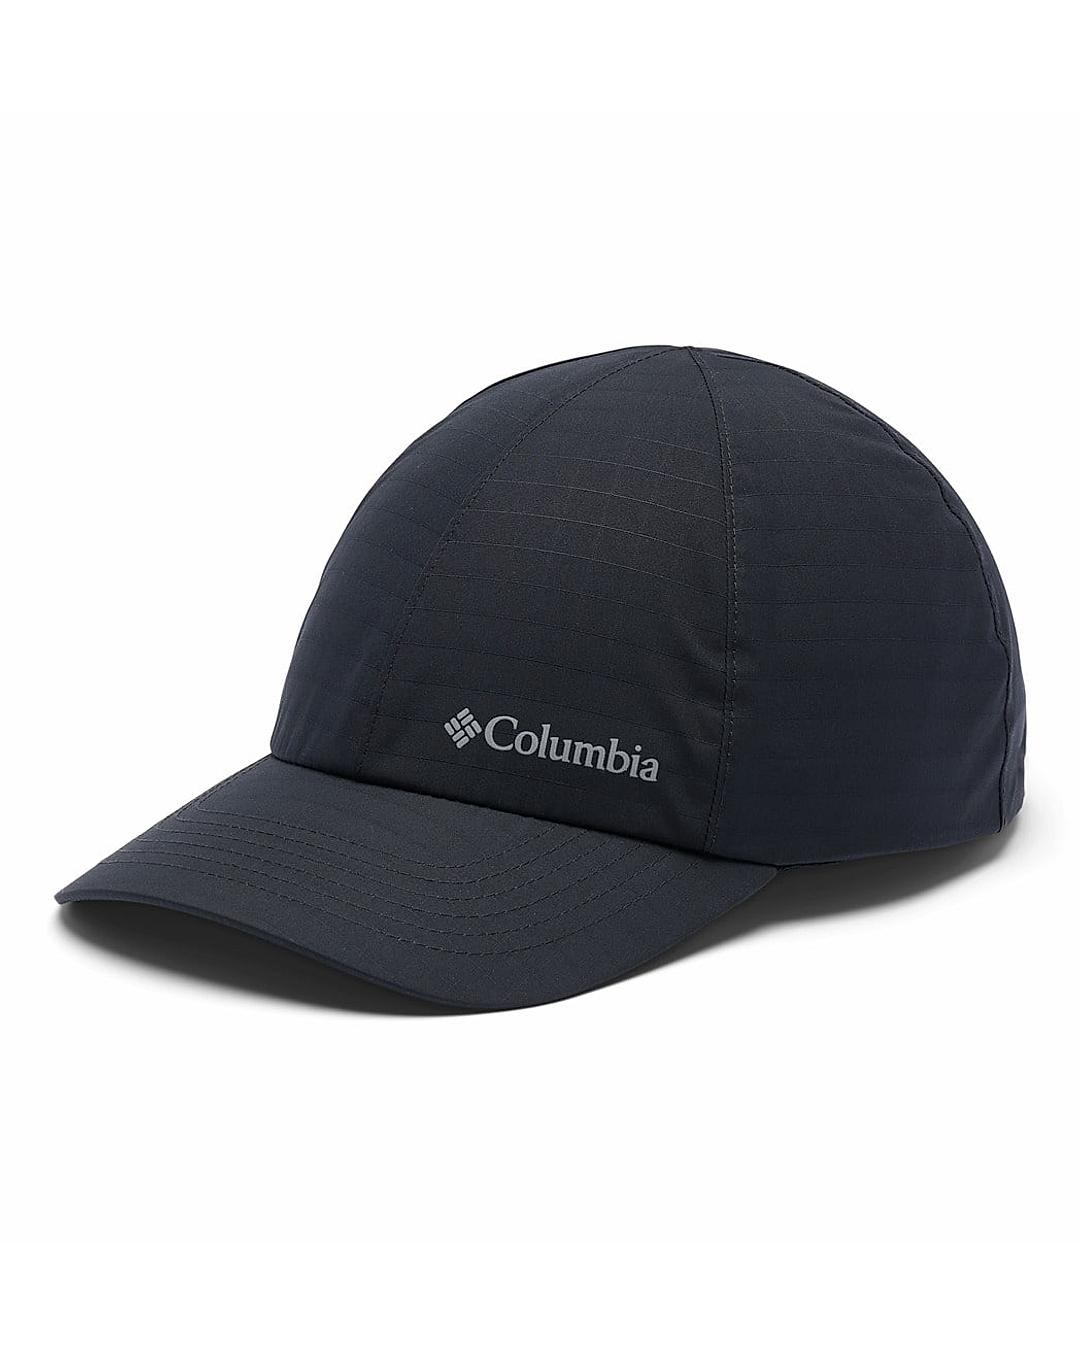 Buy Columbia Black Buckhollow Waterproof Cap For Men and Women Online at  Adventuras